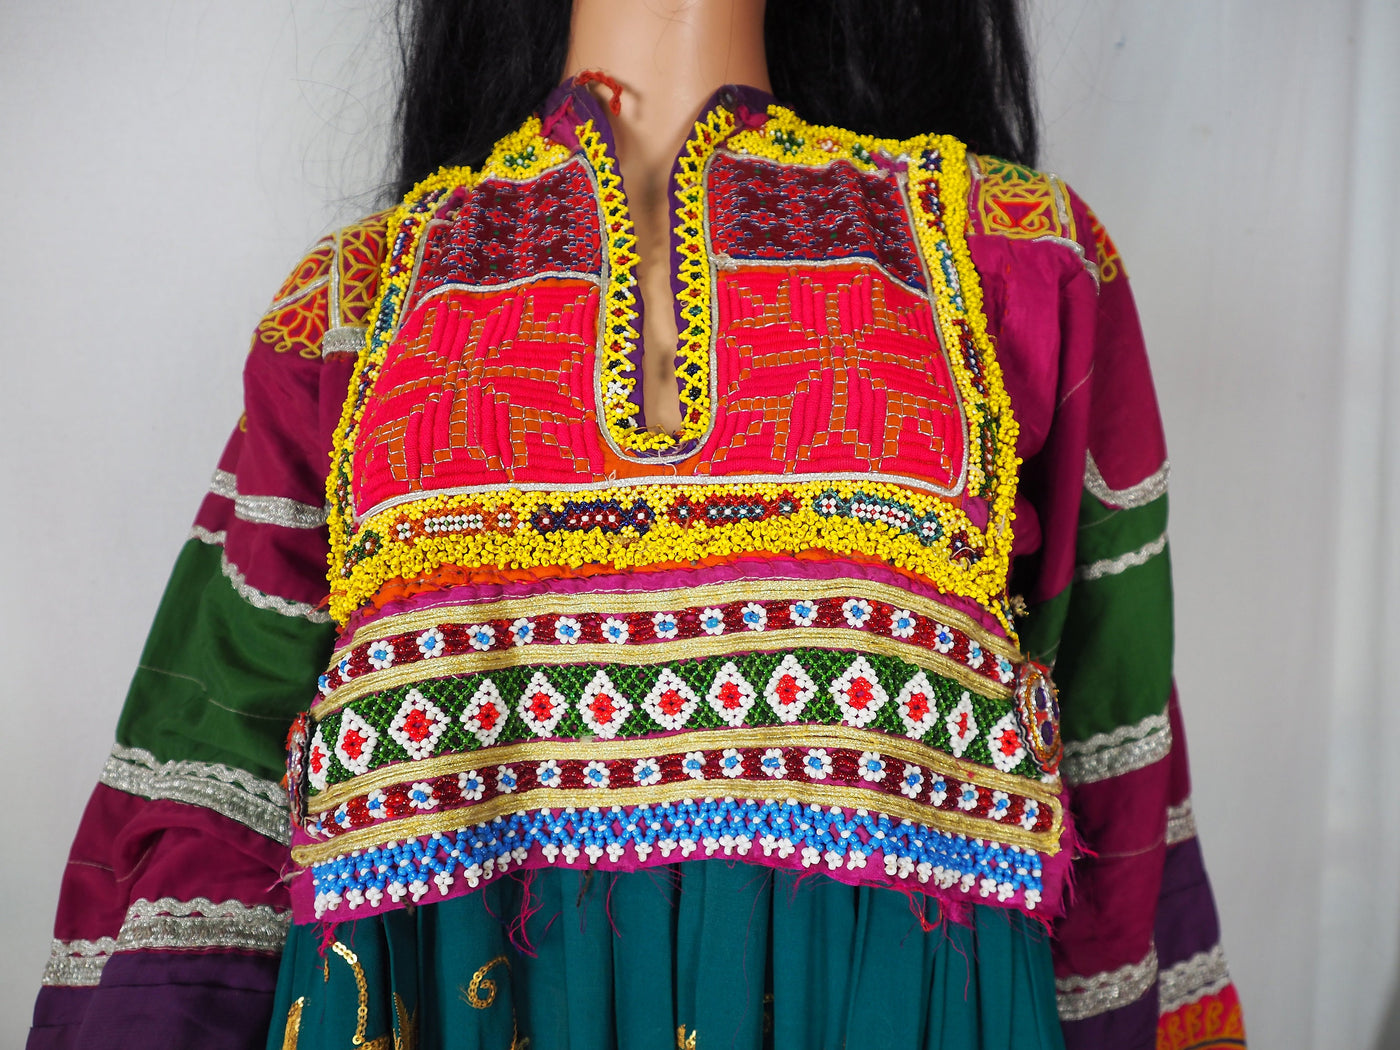 antik Orient Nomaden kuchi frauen Hochzeit Tracht afghan  kleid afghanistan hand bestickte kostüm Nr-WL21/1  Orientsbazar   